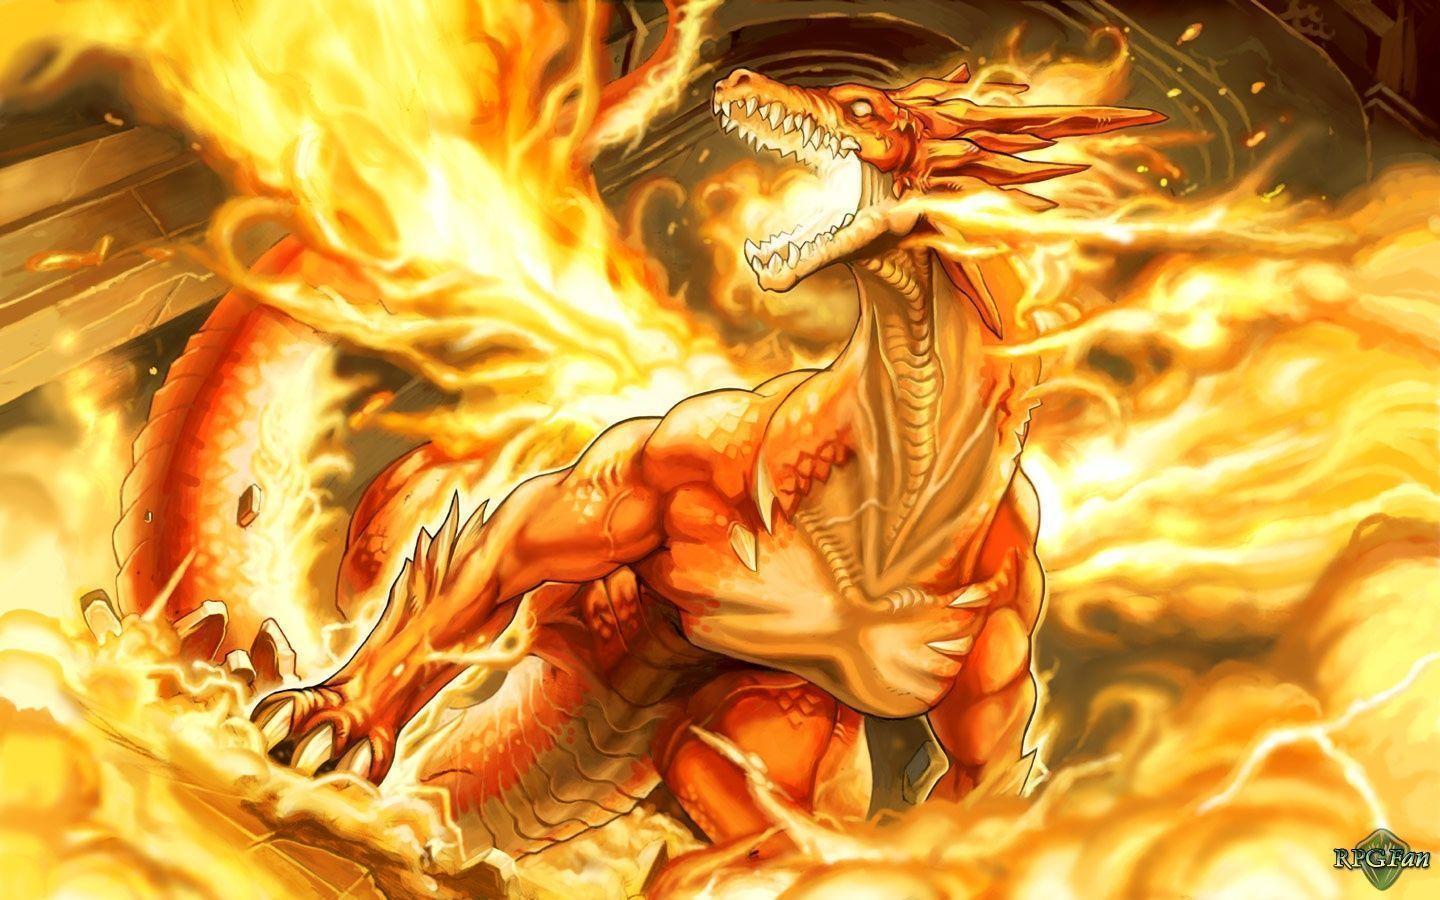 Thông tin bổ sung chap 1048 manga One Piece: Kaido hóa thành ‘Hỏa Long’